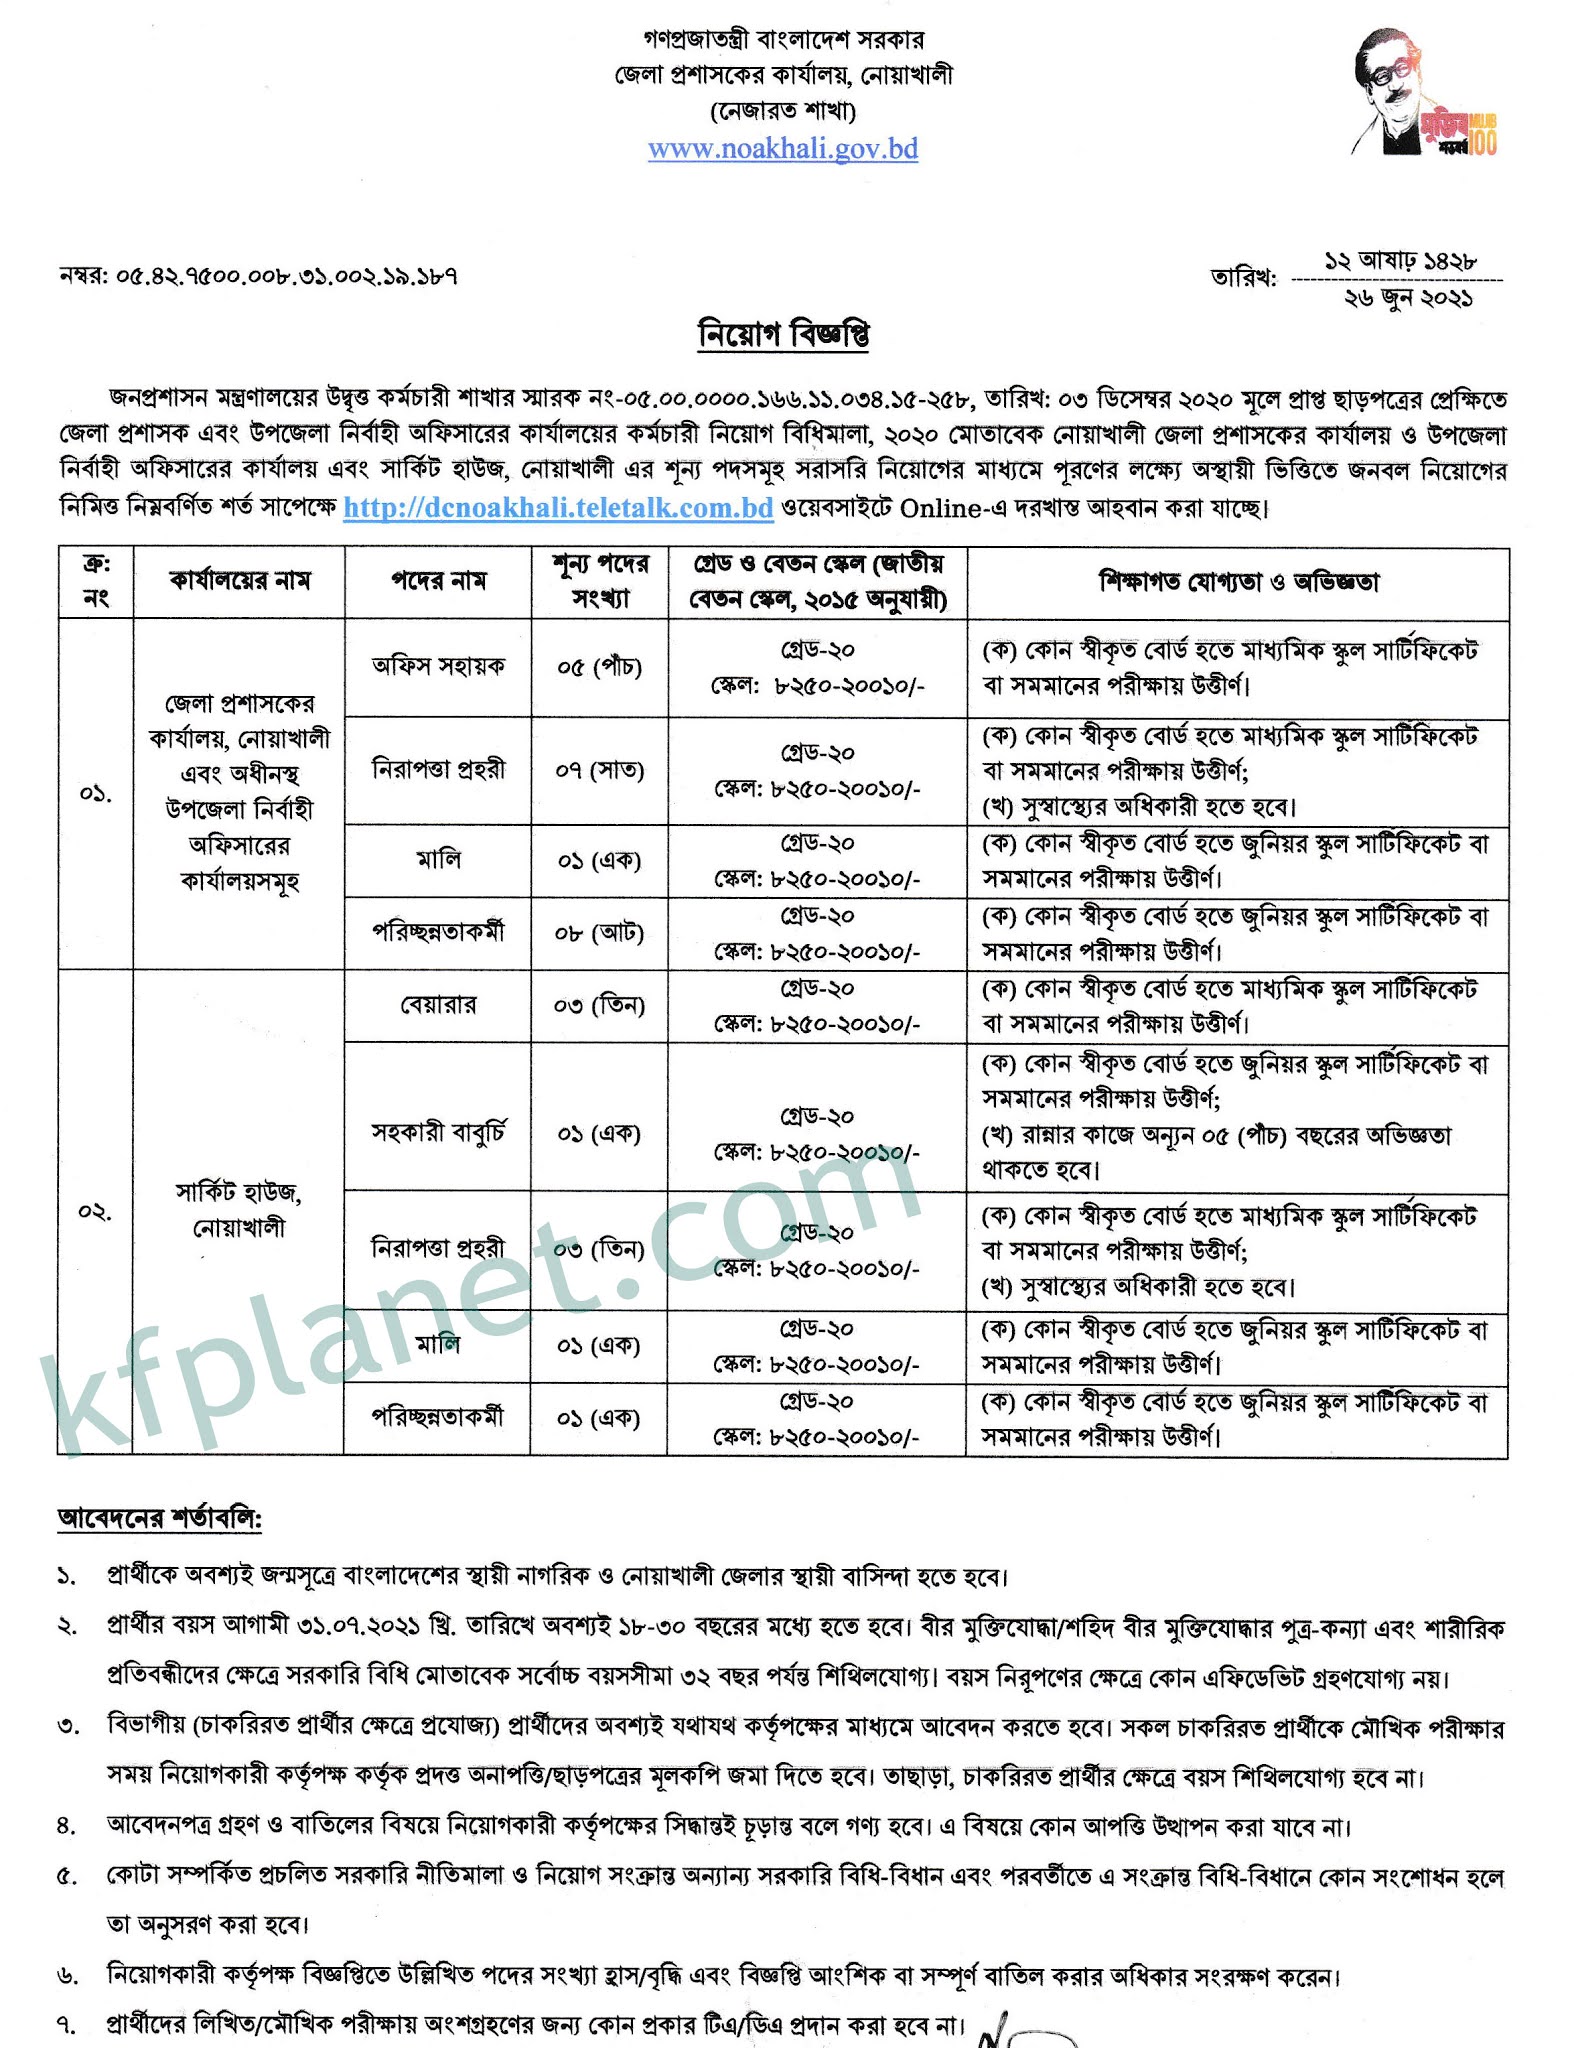 কুমিল্লা জেলা প্রশাসক নিয়োগ বিজ্ঞপ্তি ২০২১ - Comilla District Commissioner Office Job Circular 2021 - জেলা প্রশাসকের কার্যালয়ে ডিসি অফিস নিয়োগ বিজ্ঞপ্তি ২০২১